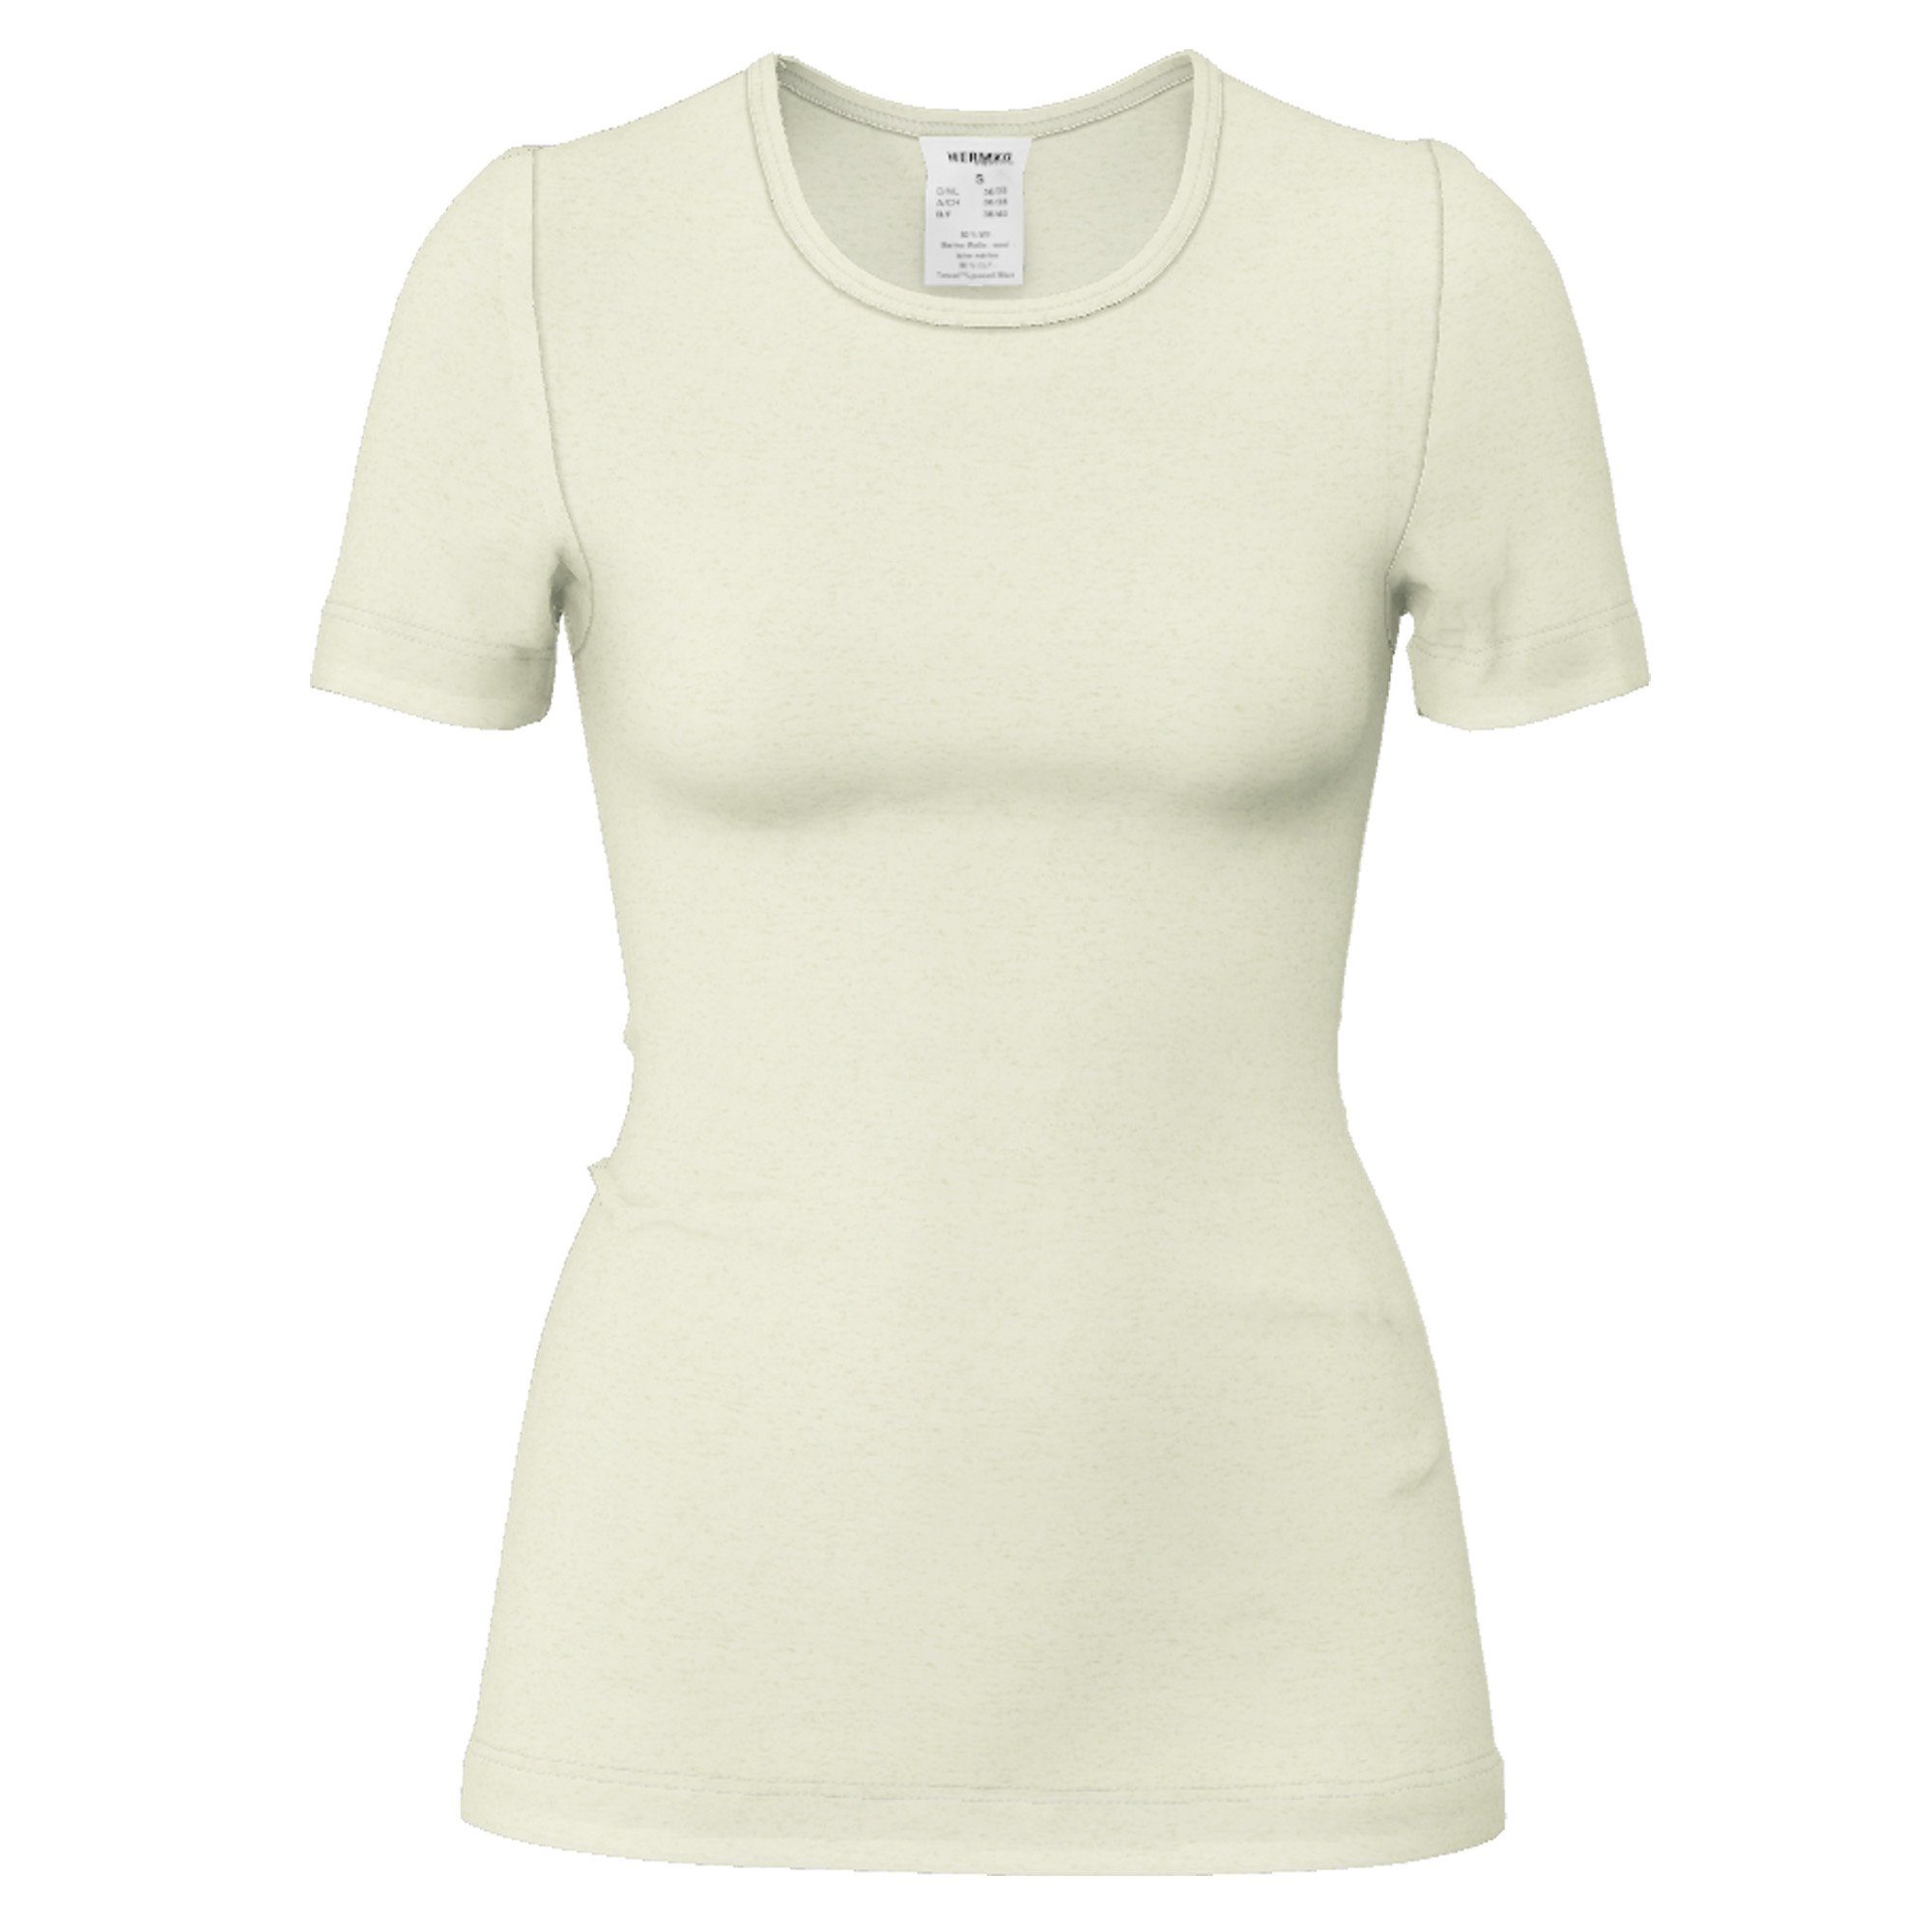 HERMKO Unterhemd 40800 Damen kurzarm Unterhemd mit Rundhals-Ausschnitt aus Wolle/Tencel natur